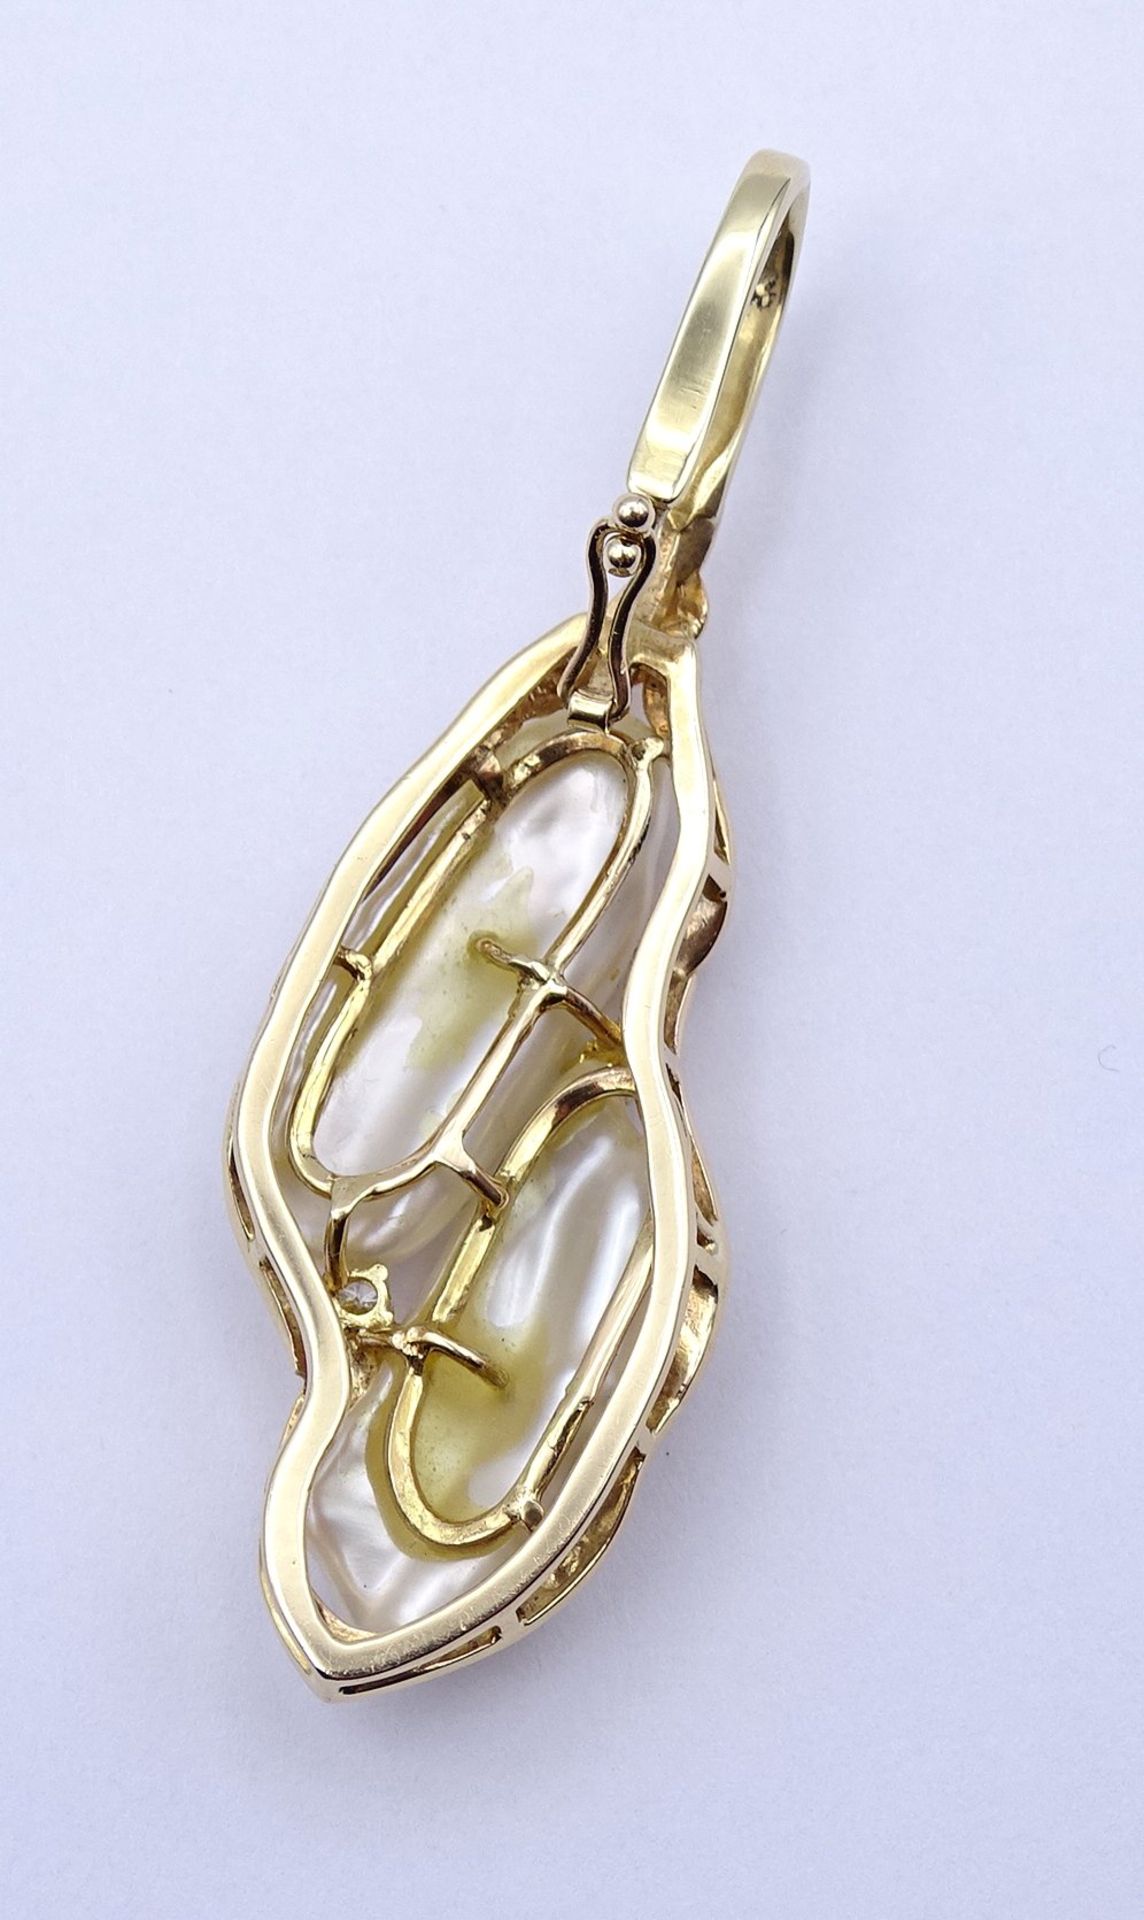 Schöner Gold Anhänger 585/000 mit Perlen und Brillanten, L. 6,1cm, 10,2g. - Bild 5 aus 7